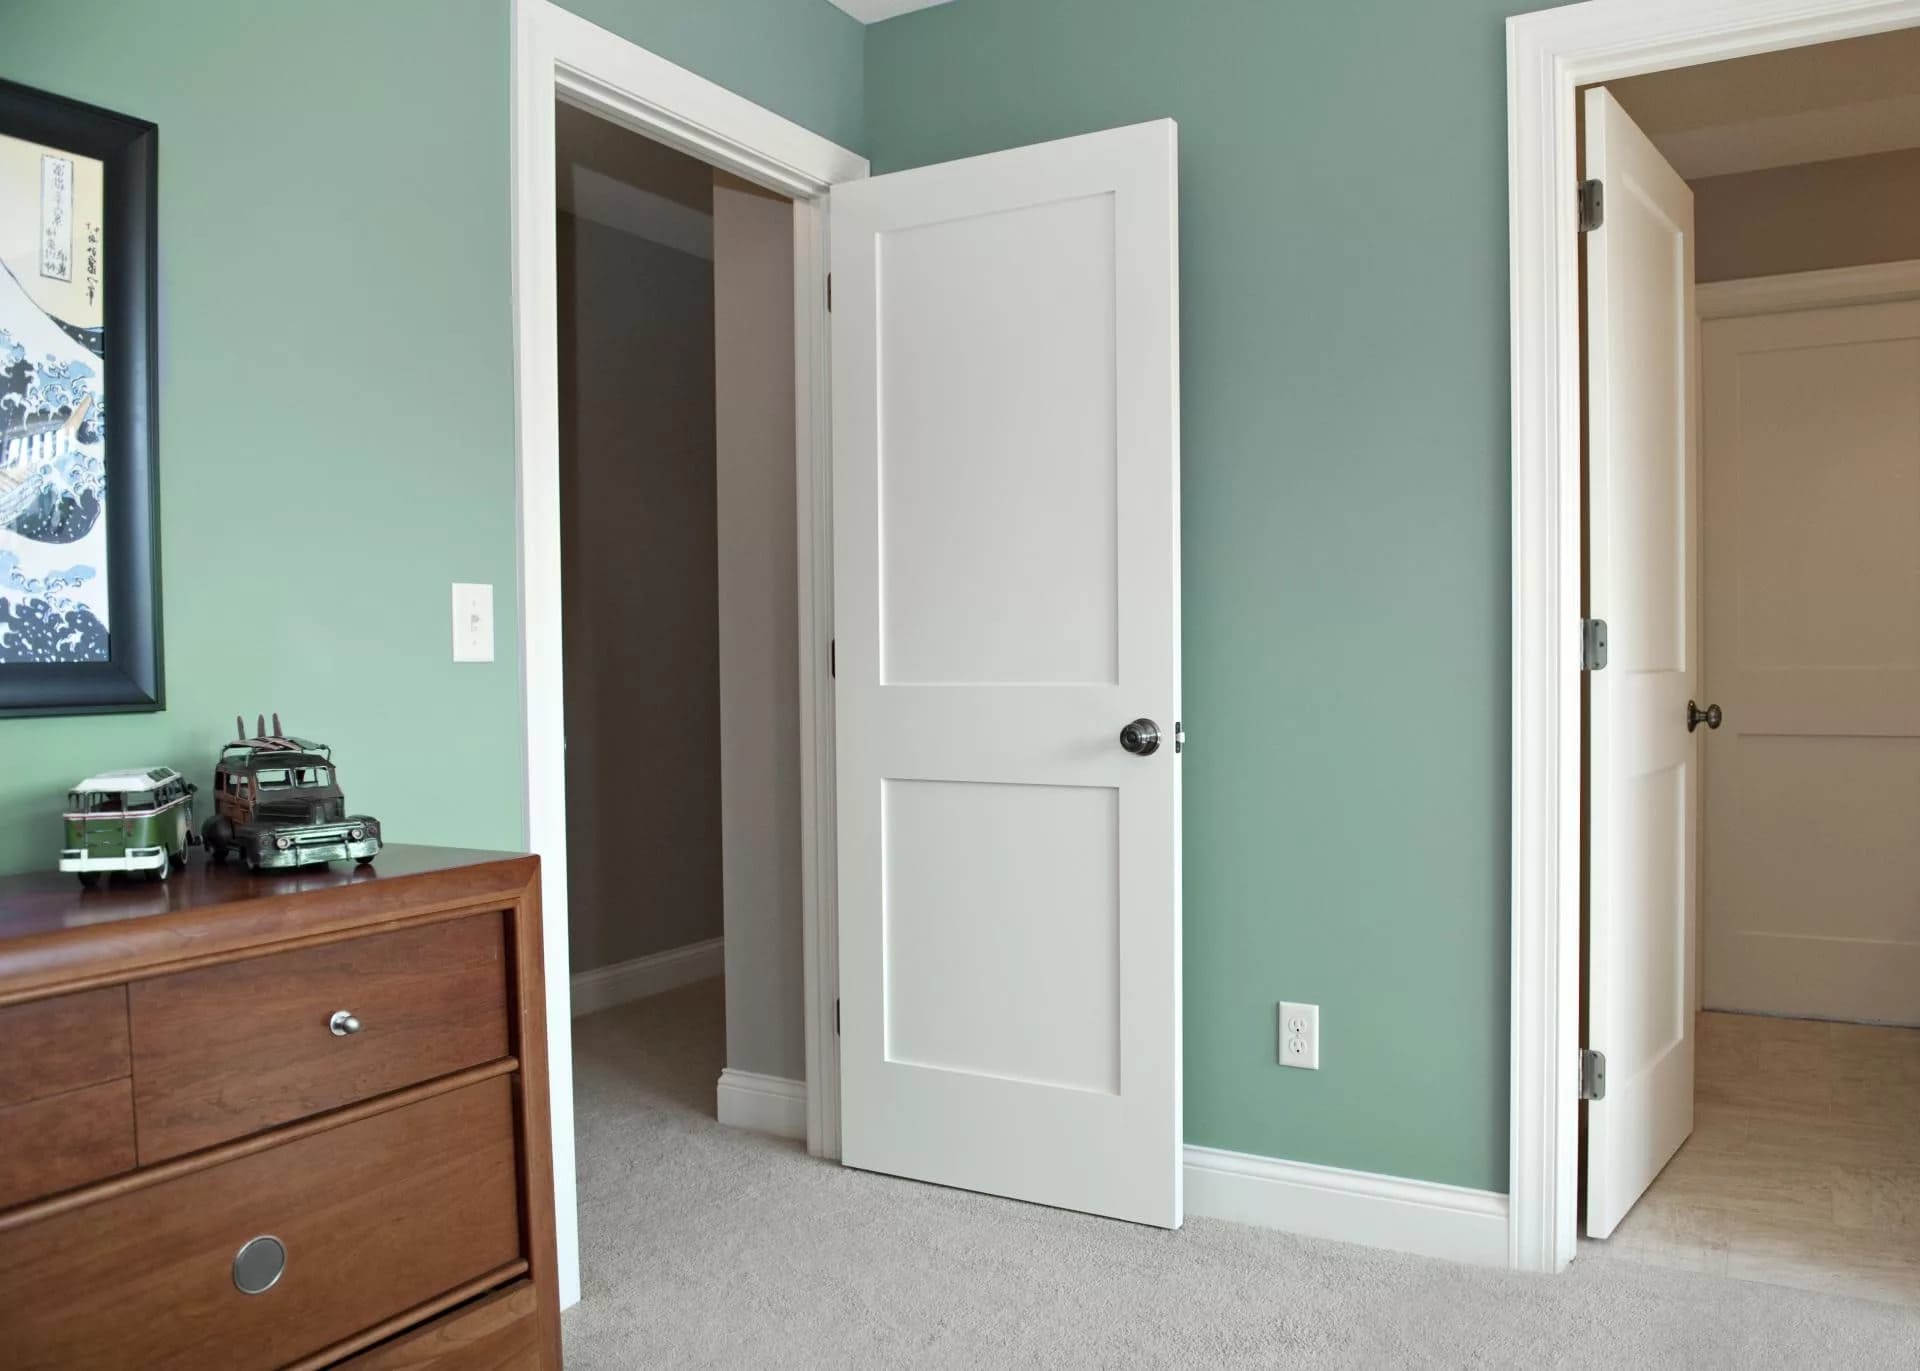 Дверь толще стены. Двери в интерьере. Разные двери в интерьере квартиры. Дверь в комнату. Белые двери в интерьере квартиры.